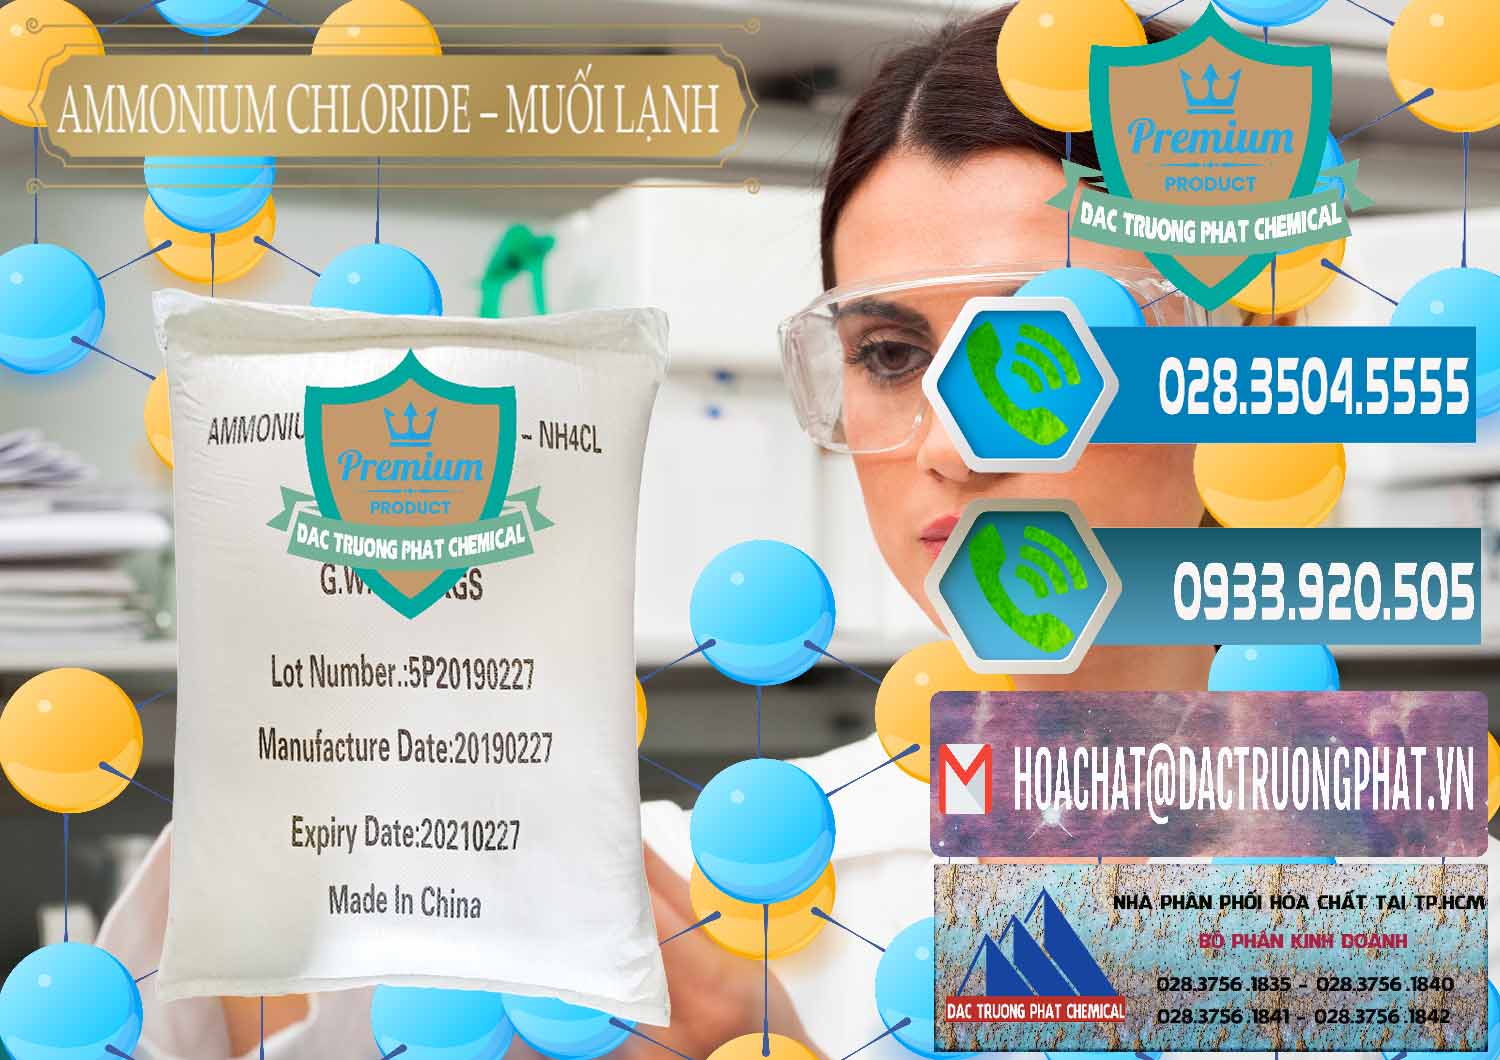 Cung cấp _ bán Ammonium Chloride - Muối Lạnh NH4CL Trung Quốc China - 0021 - Cung cấp và bán hóa chất tại TP.HCM - congtyhoachat.net